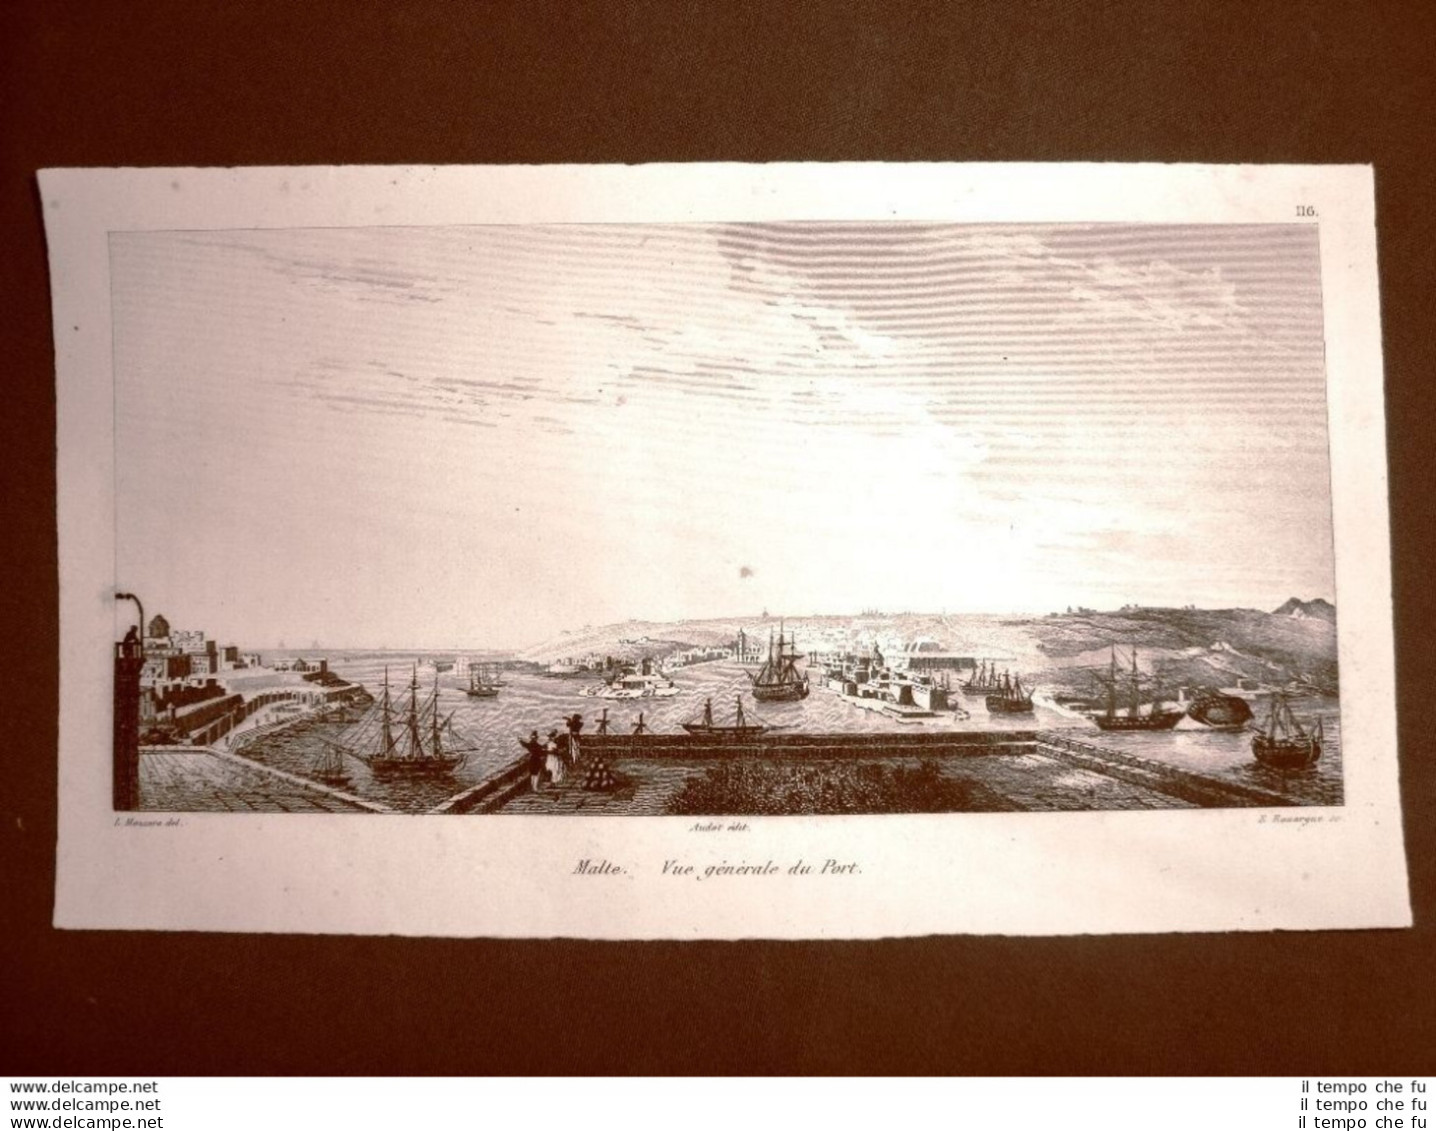 Malta Veduta Generale Del Porto Incisione All'acquaforte Del 1837 Audot Pomba - Avant 1900